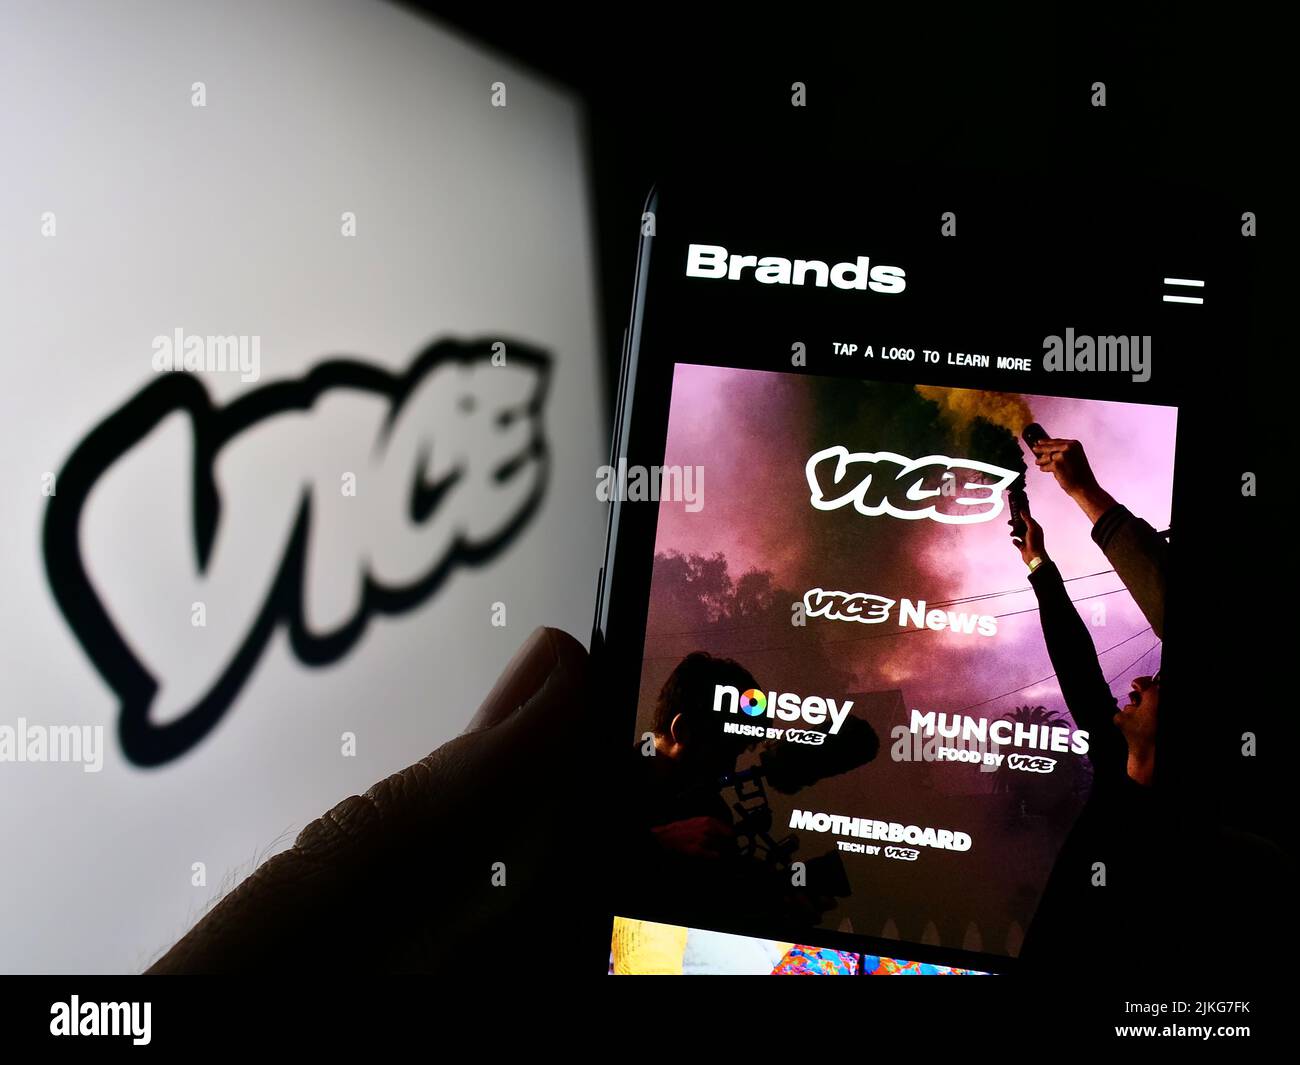 Persona que sostiene el teléfono celular con el Web site de la compañía de radiodifusión Vice Media LLC en la pantalla delante del logotipo. Enfoque en el centro de la pantalla del teléfono. Foto de stock